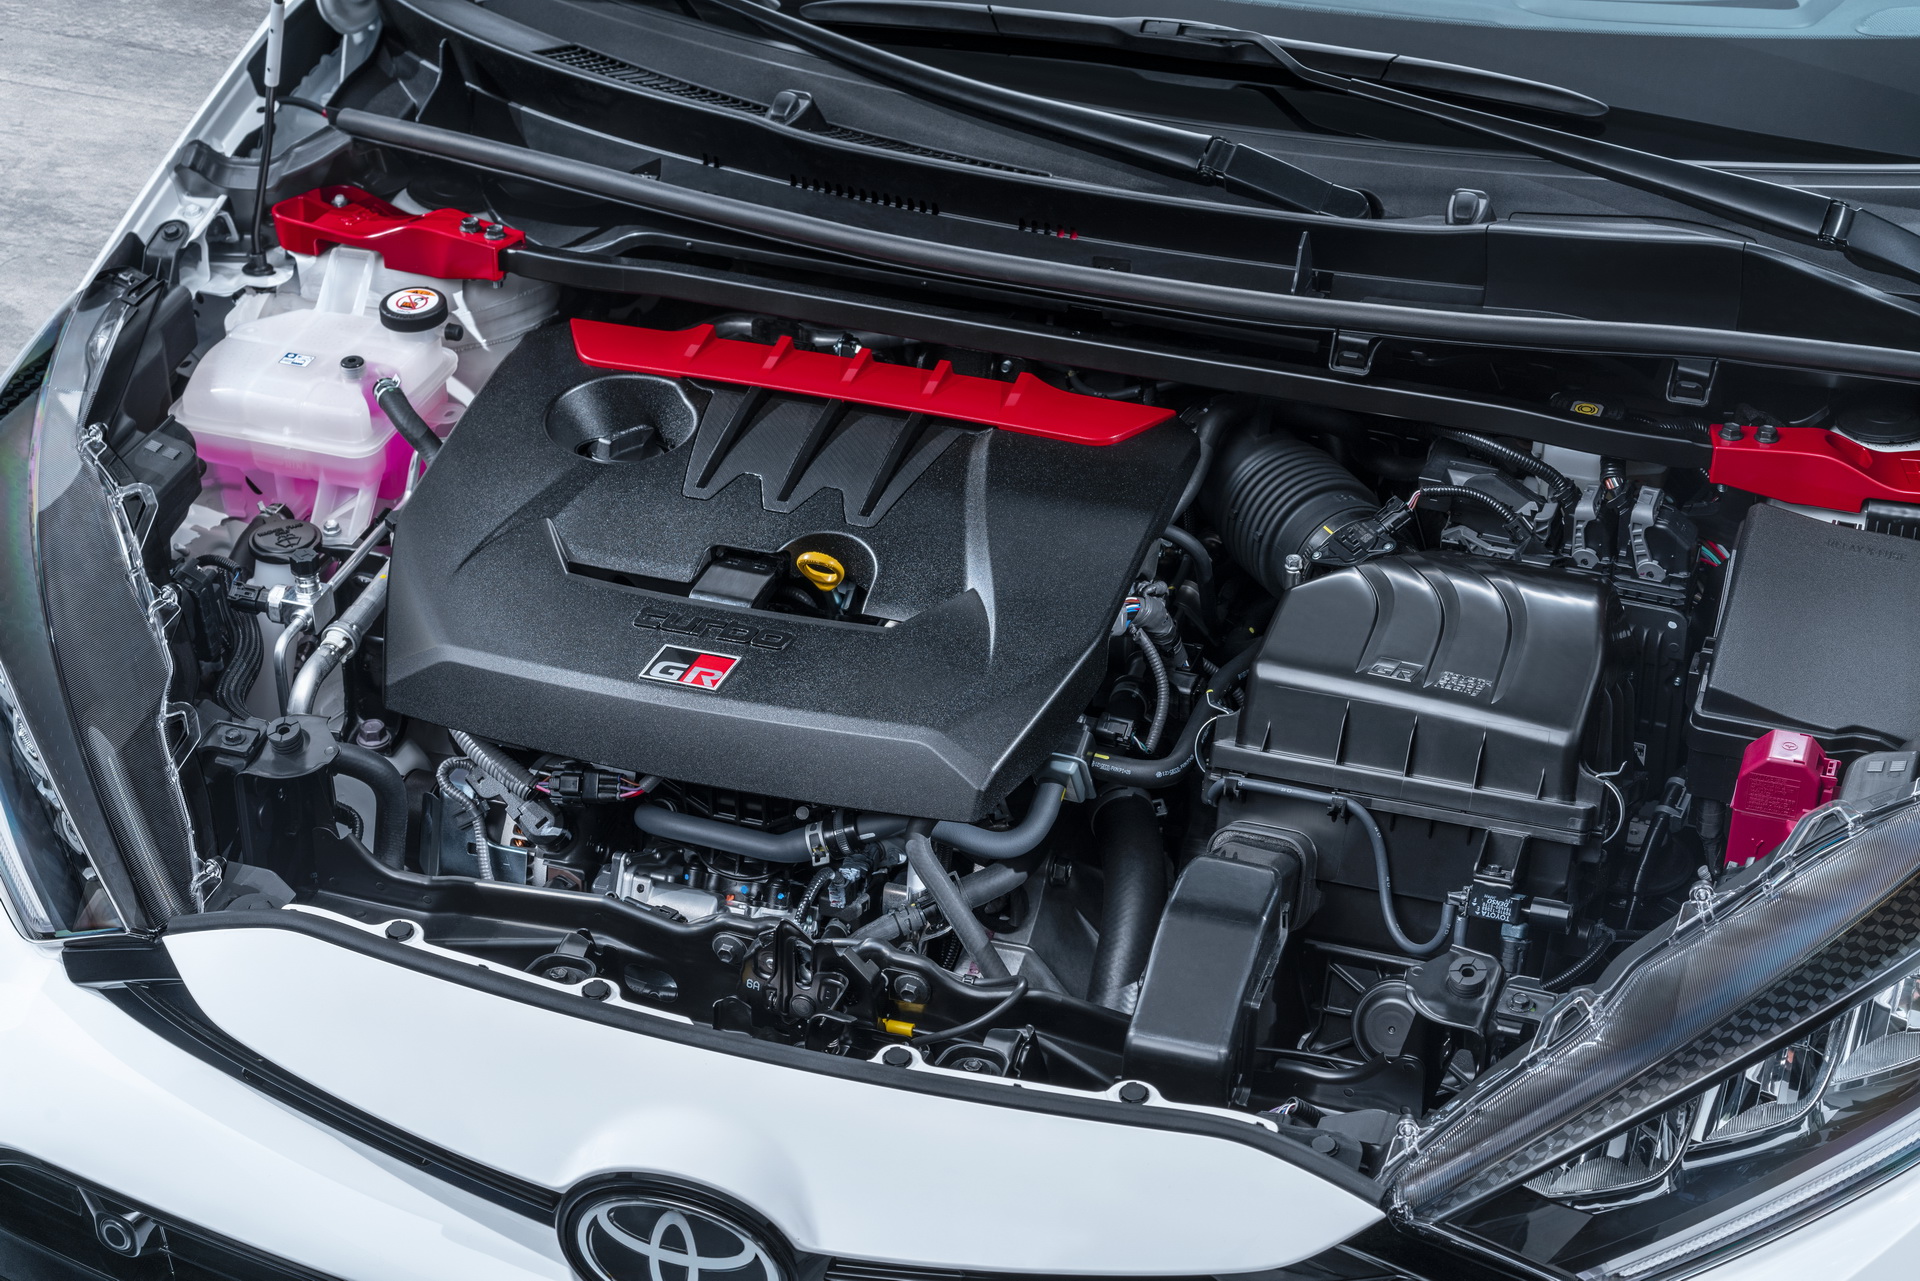 2020 Toyota GR Yaris tanıtıldı: 261 bg güç ve dört tekerlekten çekiş